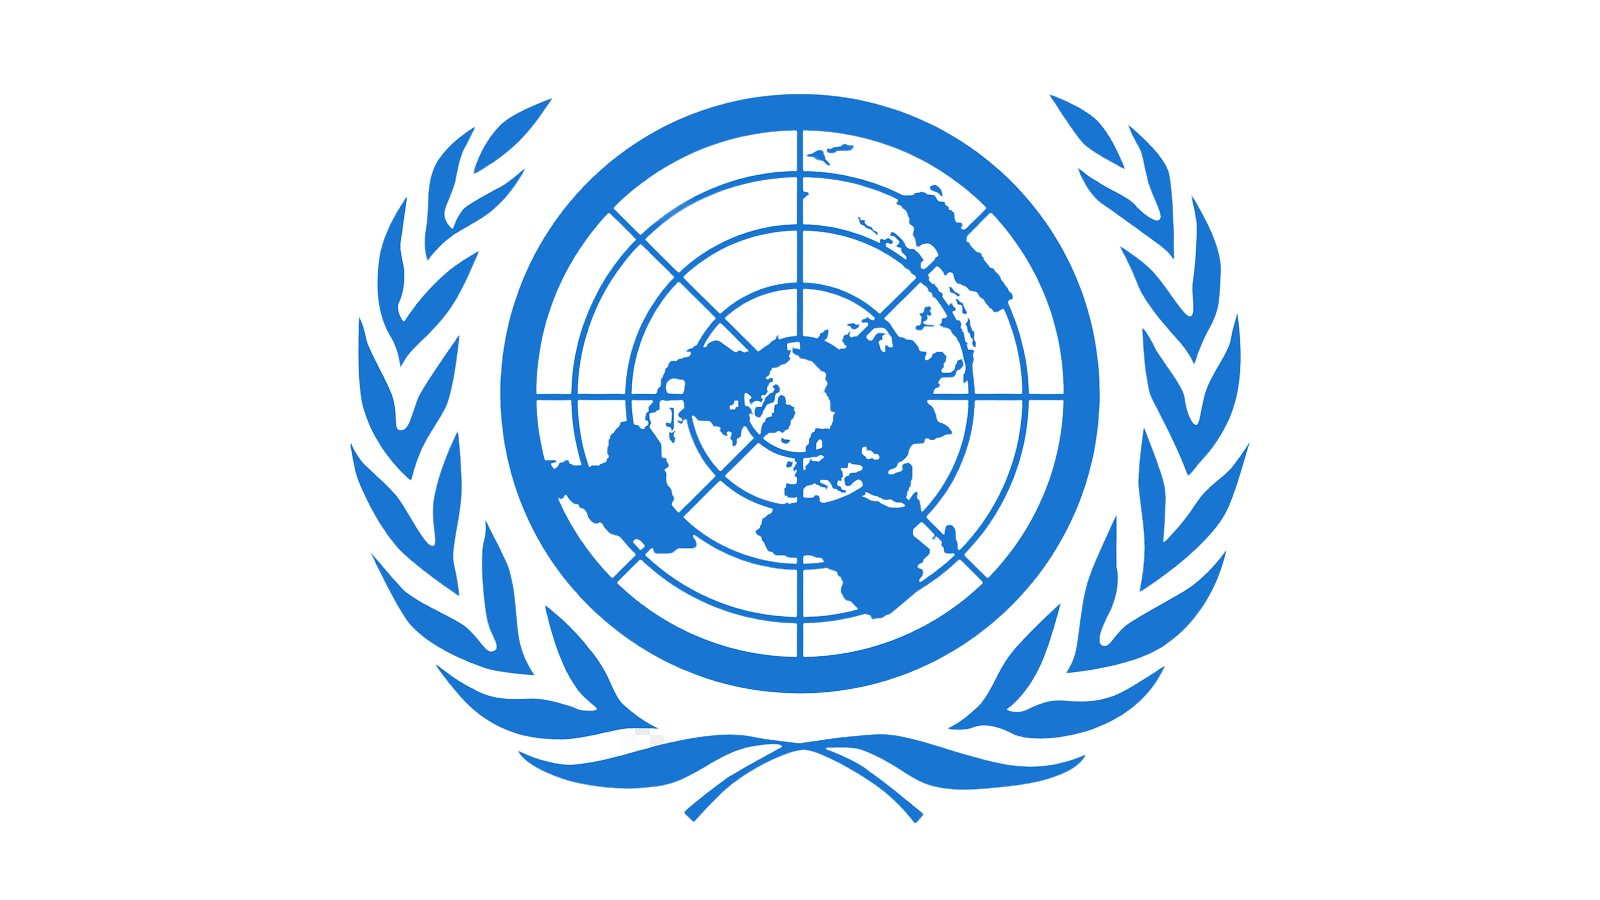 Образ оон. Всемирная метеорологическая организация (ВМО). Международные организации ООН. Организация Объединенных наций (ООН). Символ ООН.